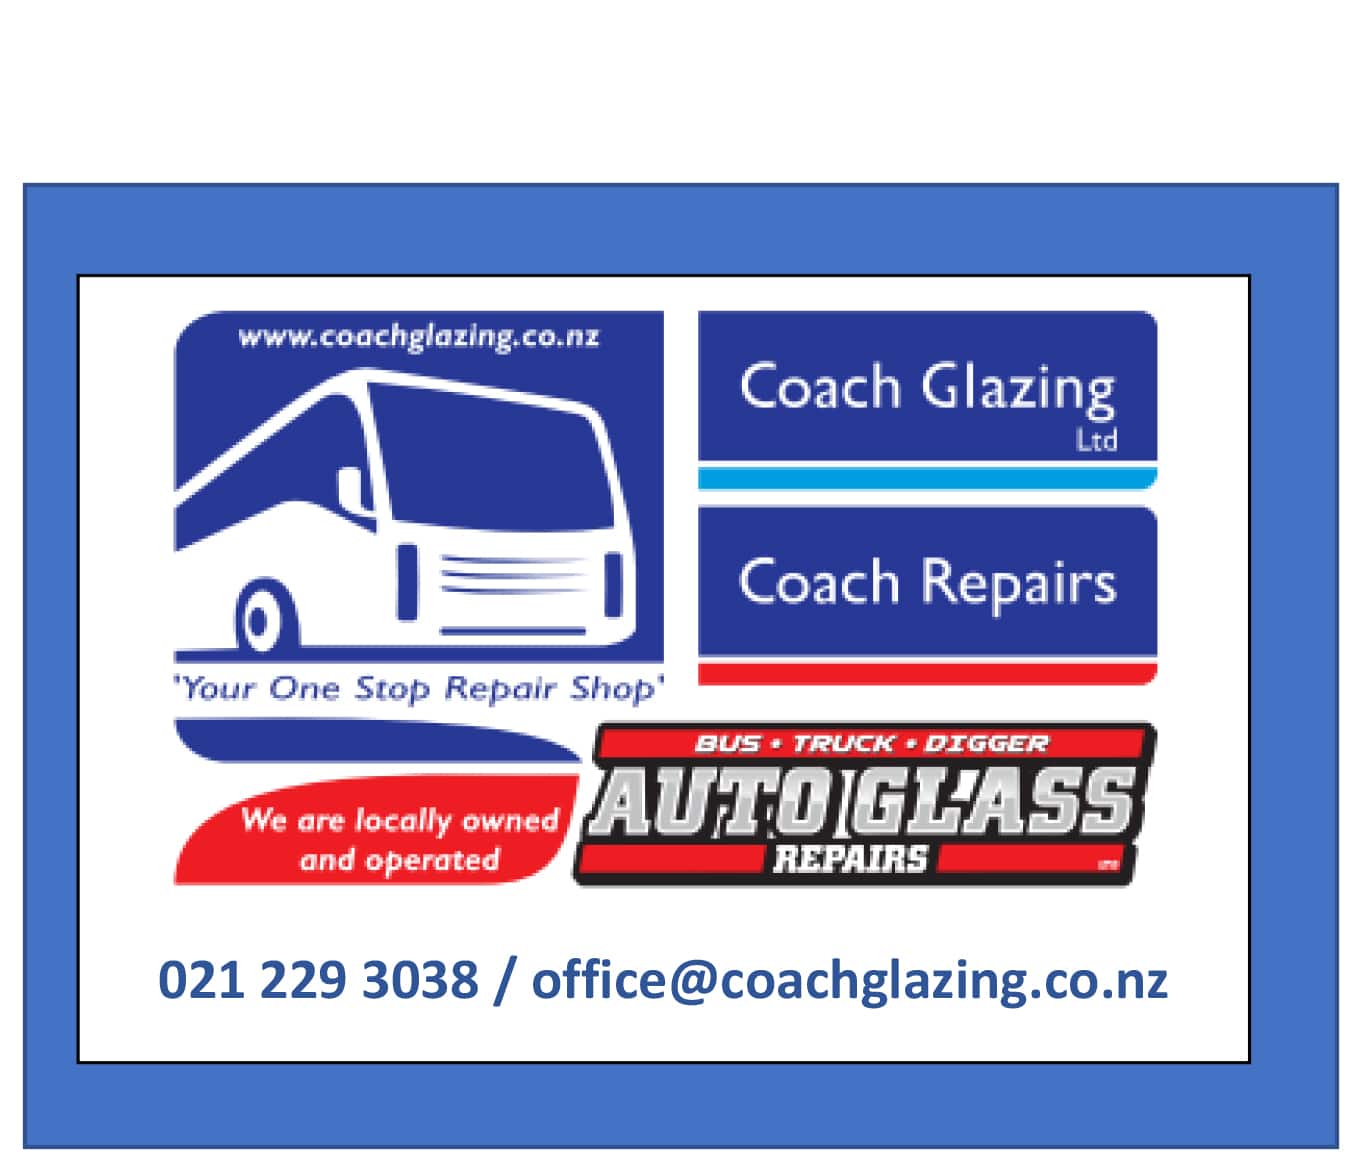 Coach Glazing Ltd